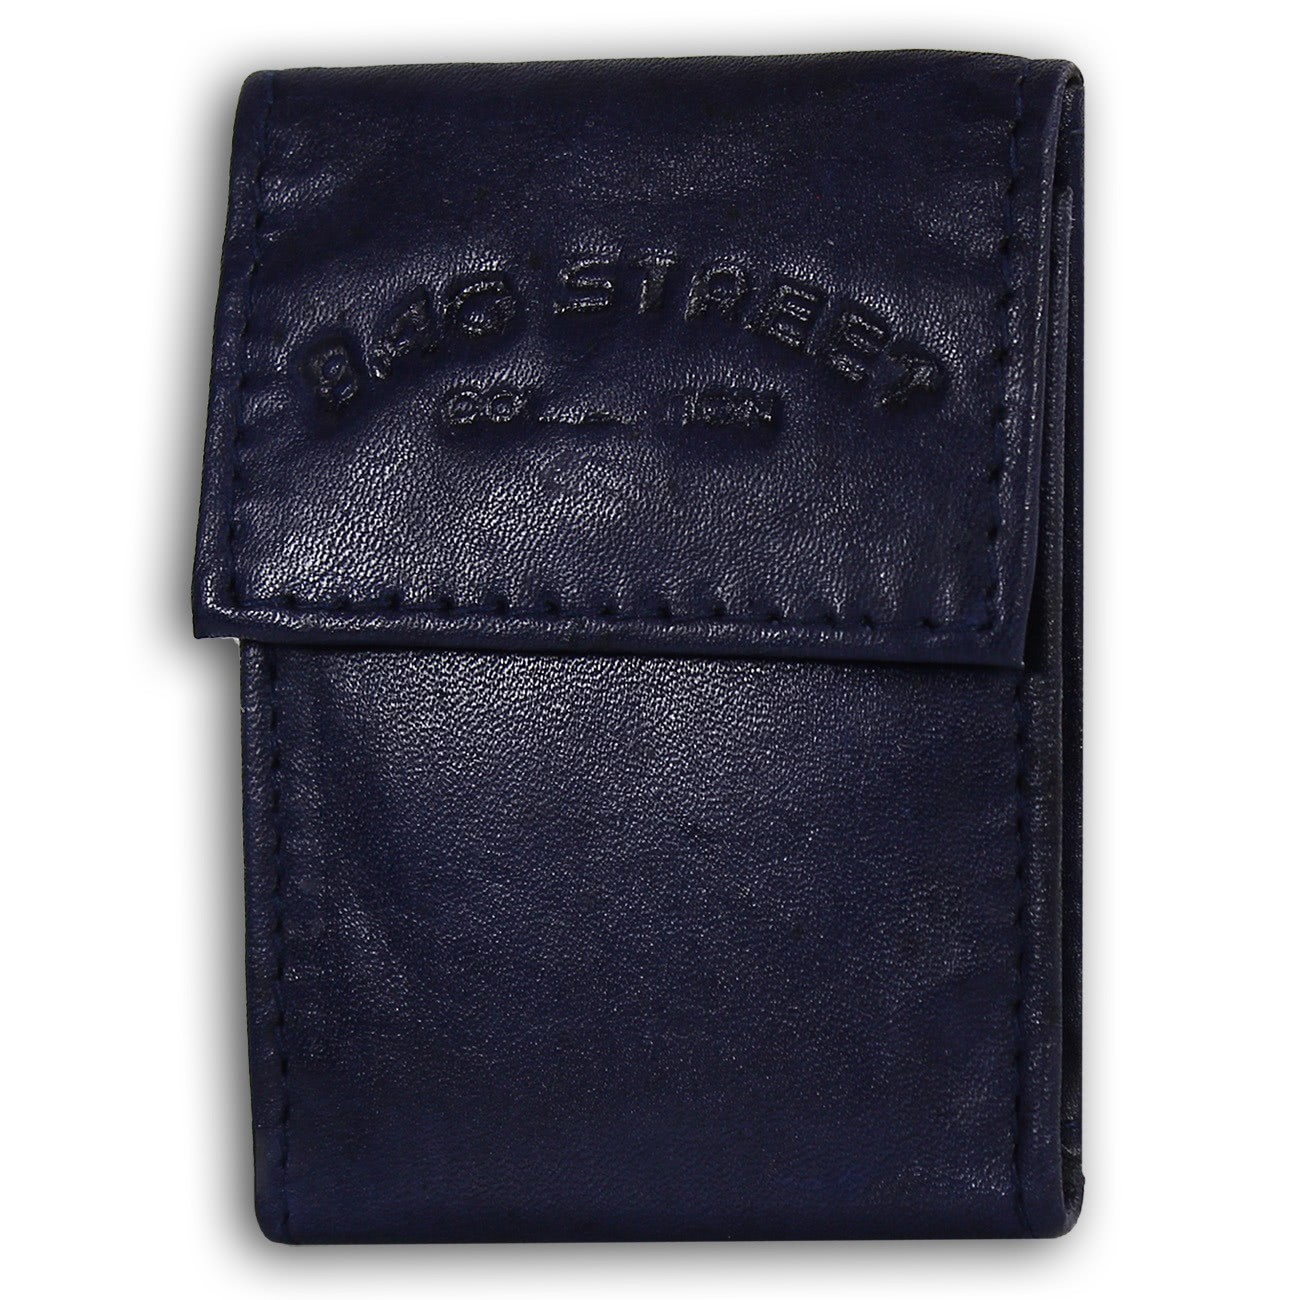 Bag Street kompakte Minibörse echtes Leder Geldbörse Portemonnaie navy OPJ801H